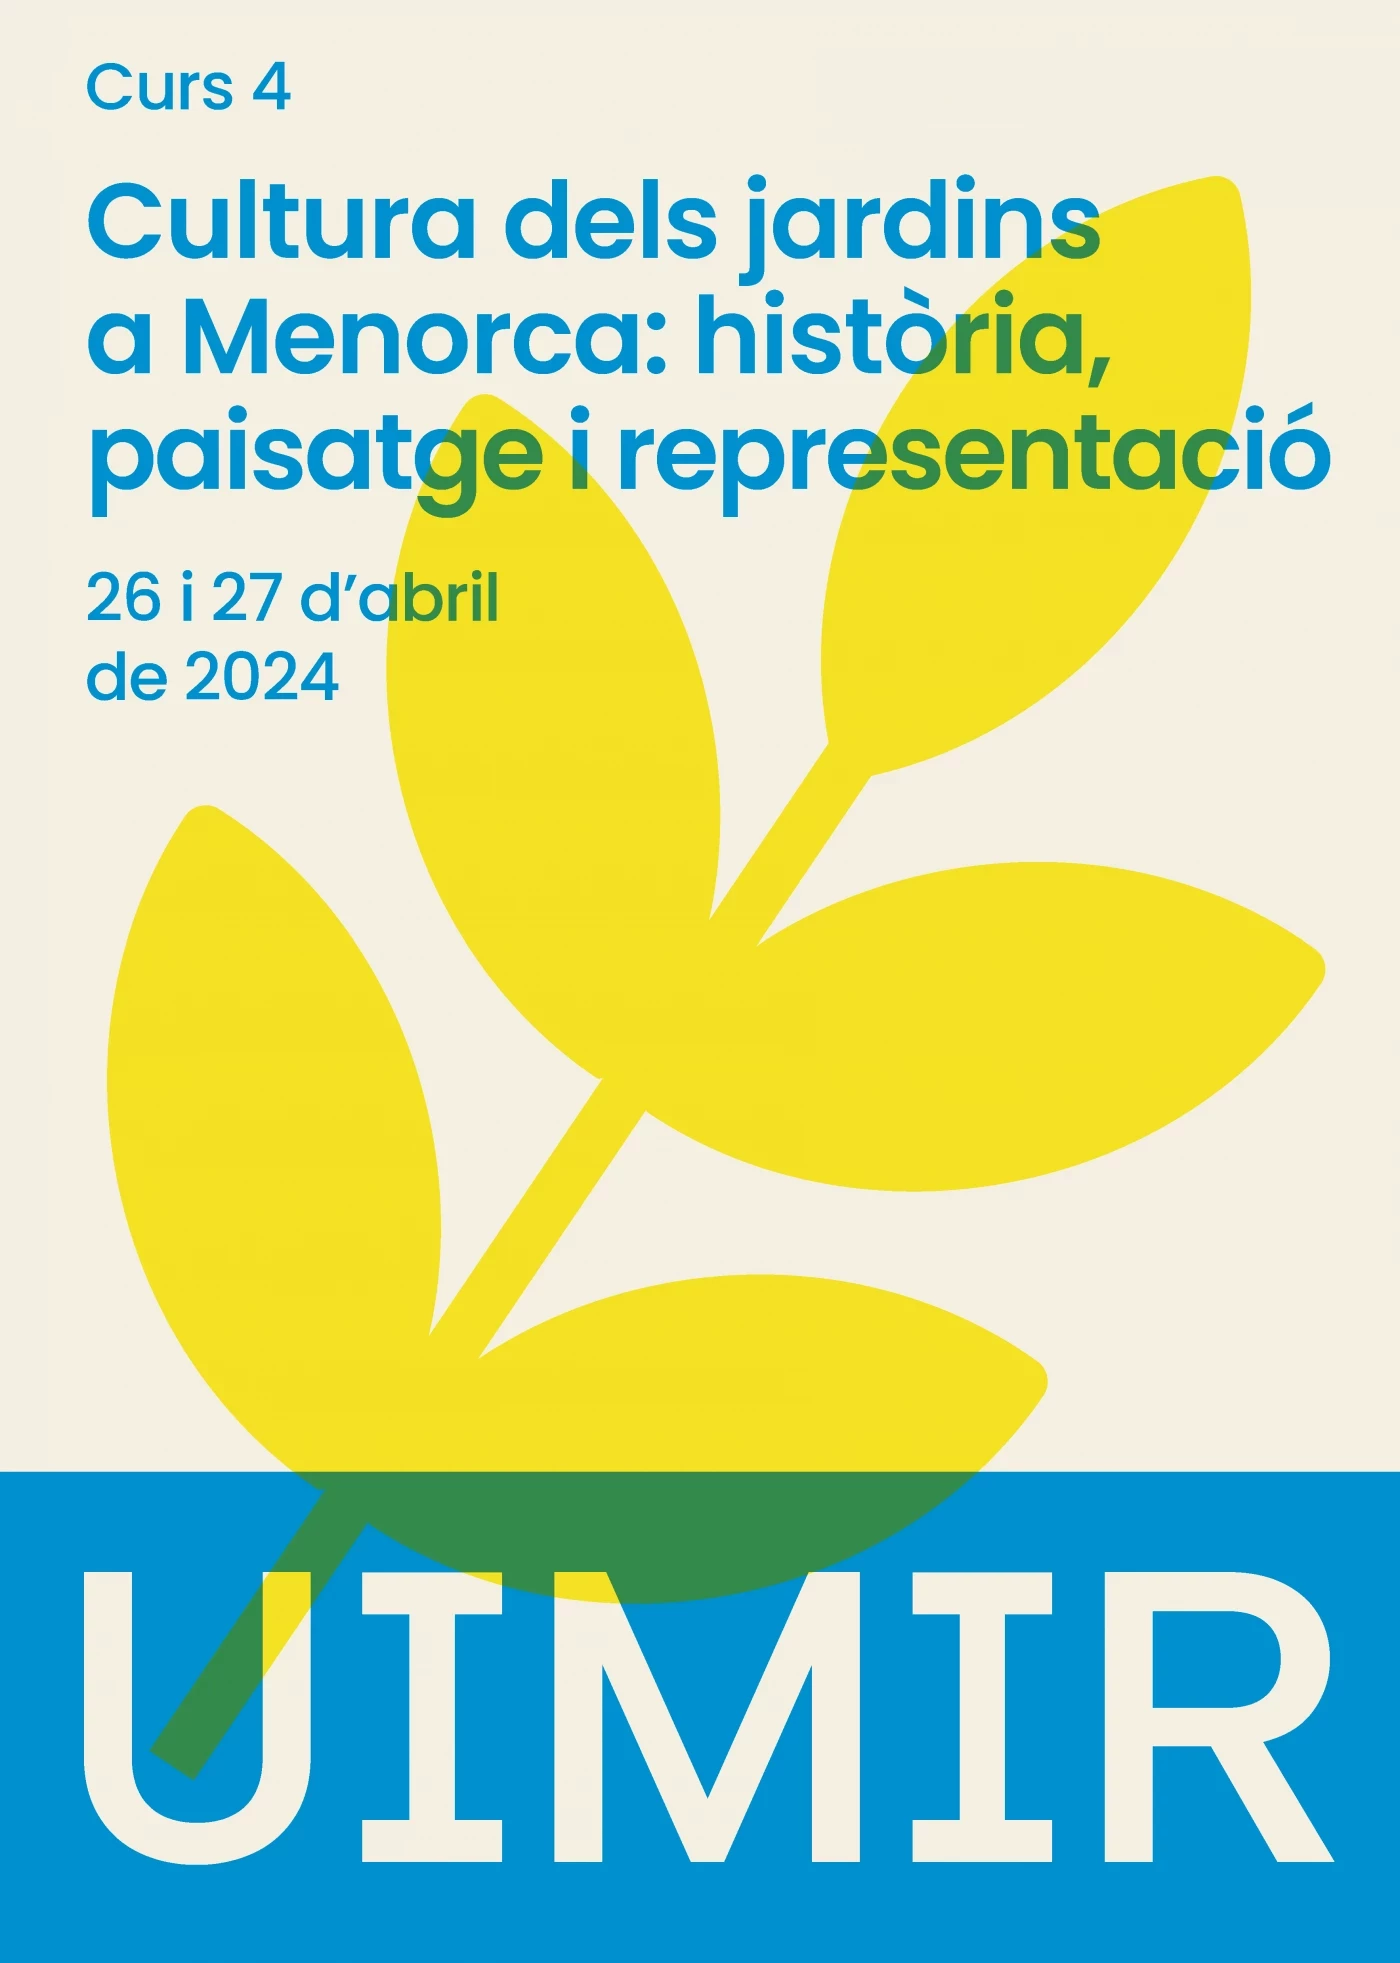 Image of event Cultura de los jardines en Menorca: historia, paisaje y representación